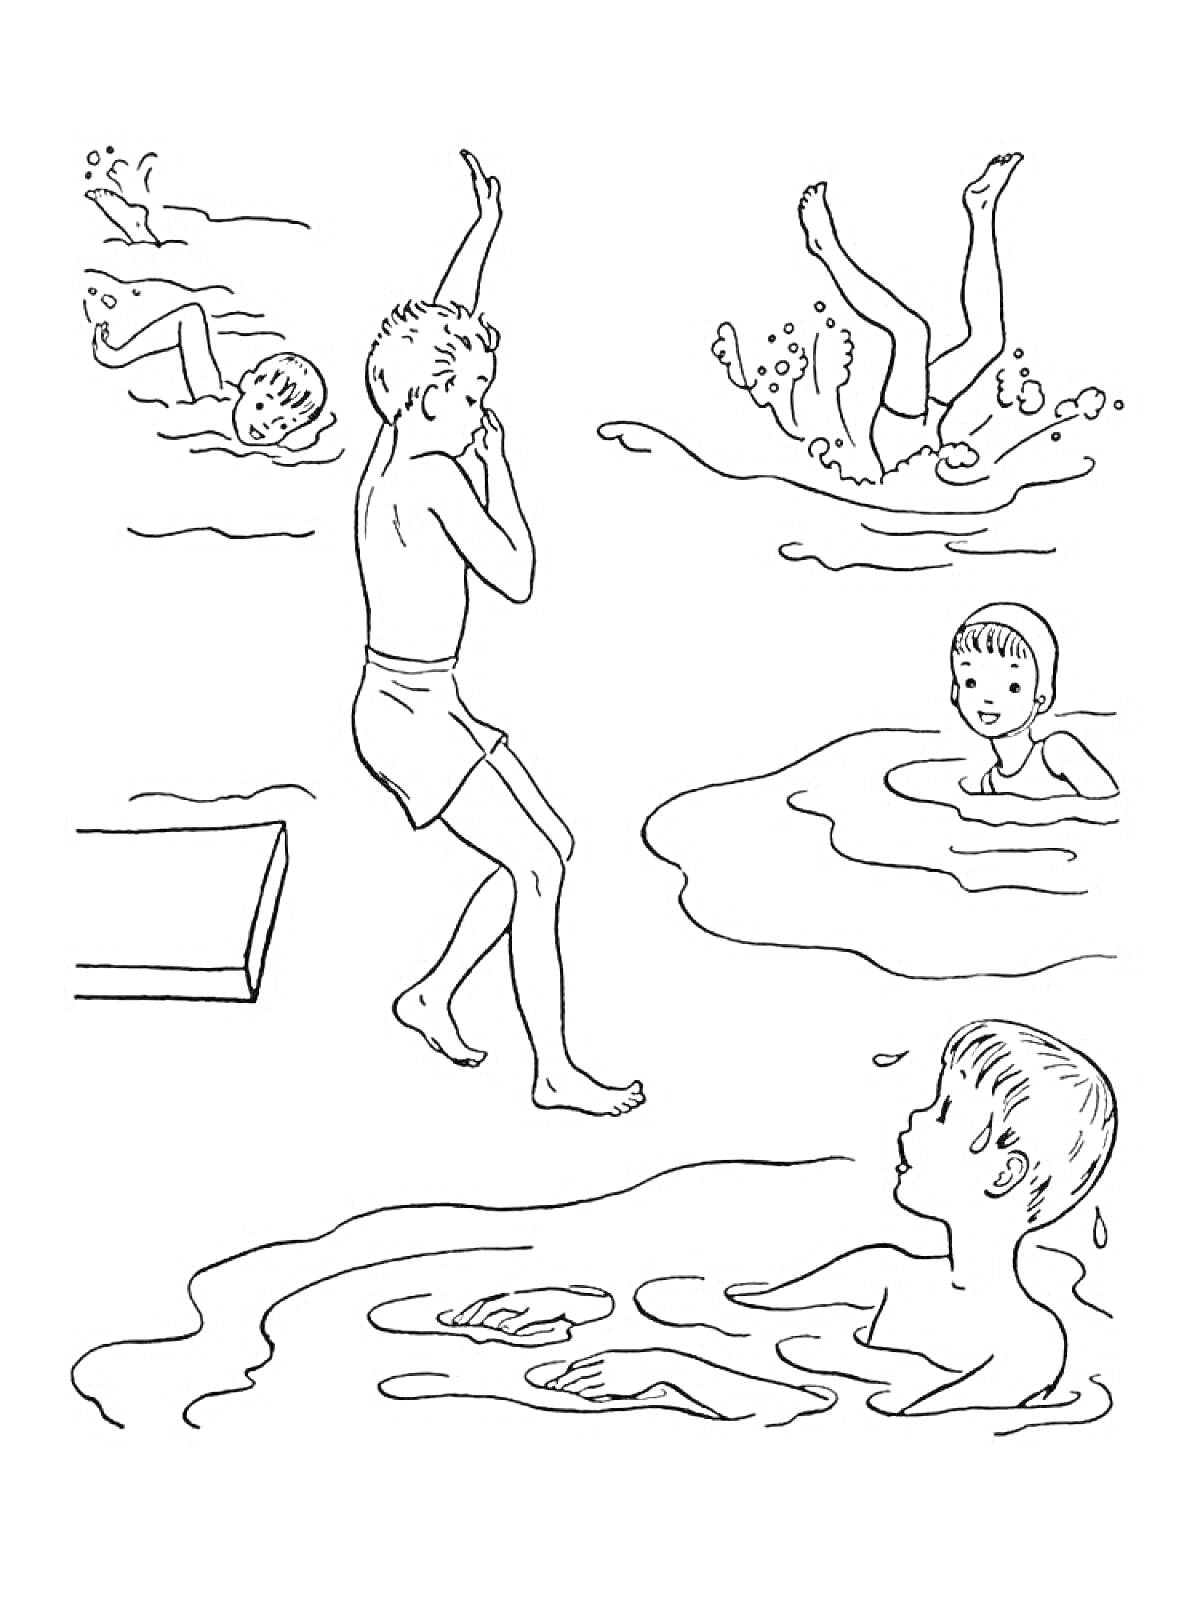 Раскраска Дети плавают и прыгают в воду.